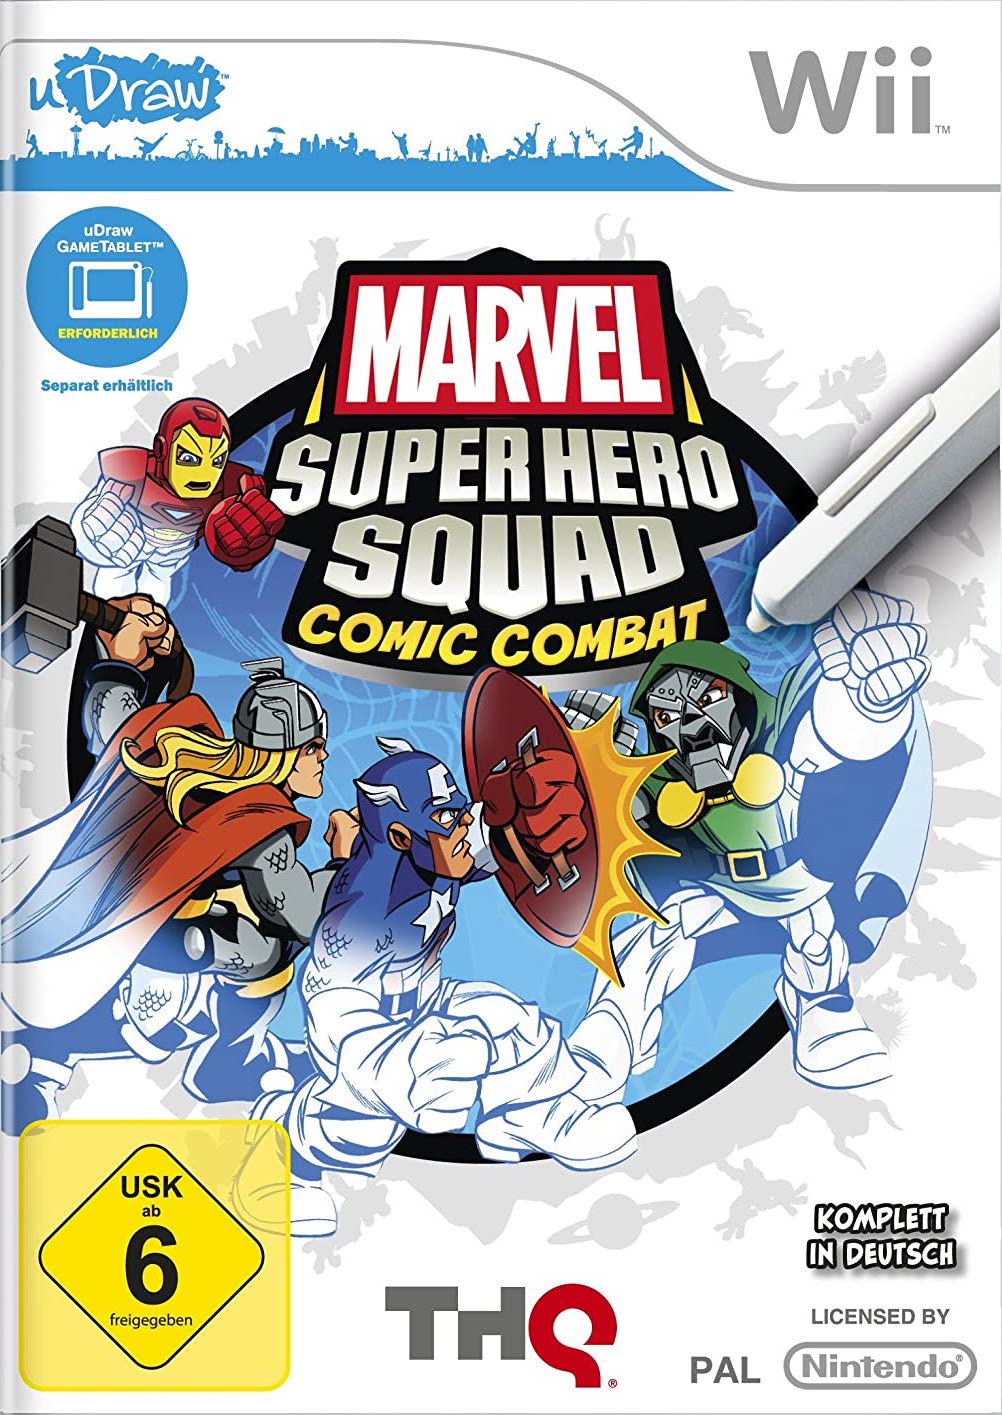 uDraw Marvel Super Hero Squad - Comic Combat